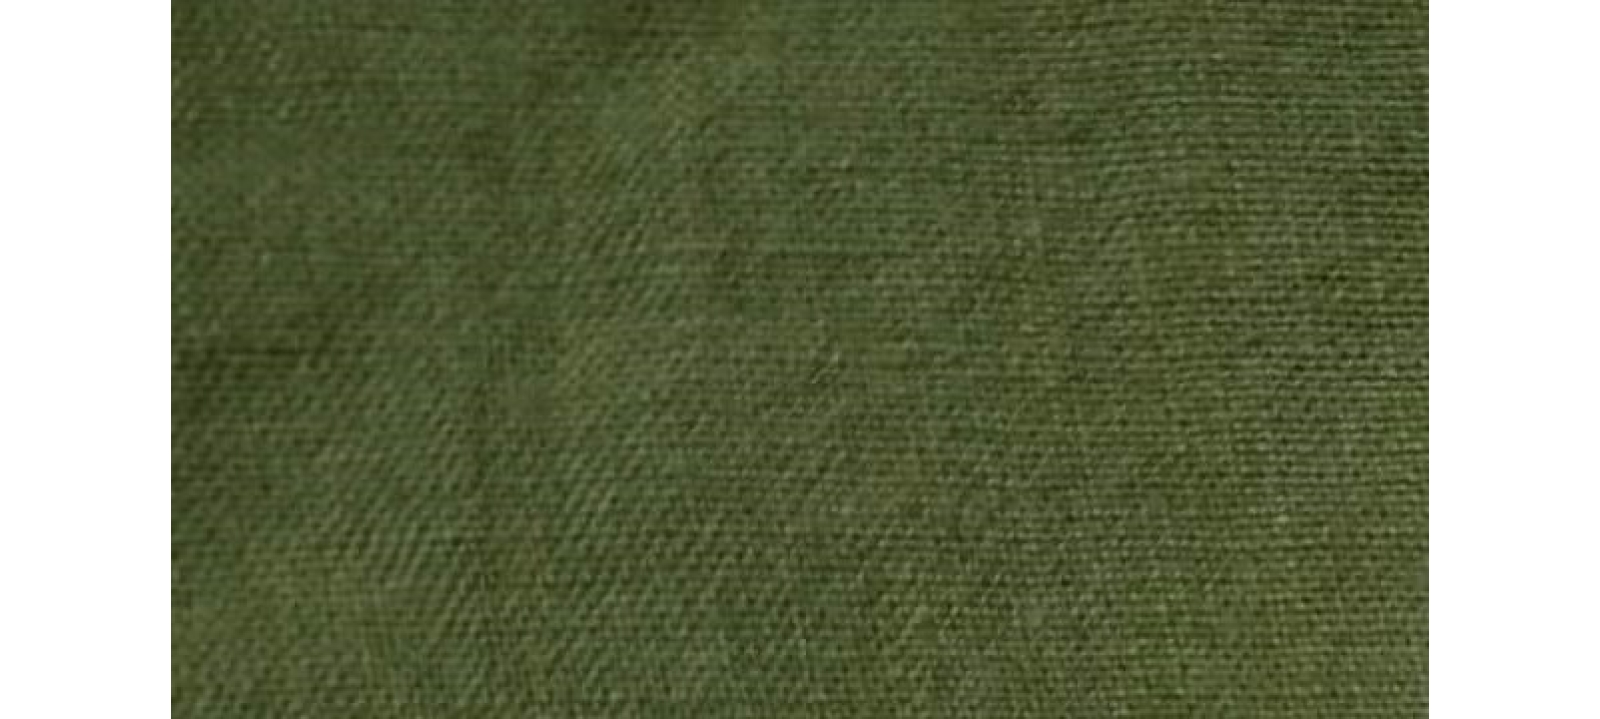 AHL1845hemp/organic cotton fabric